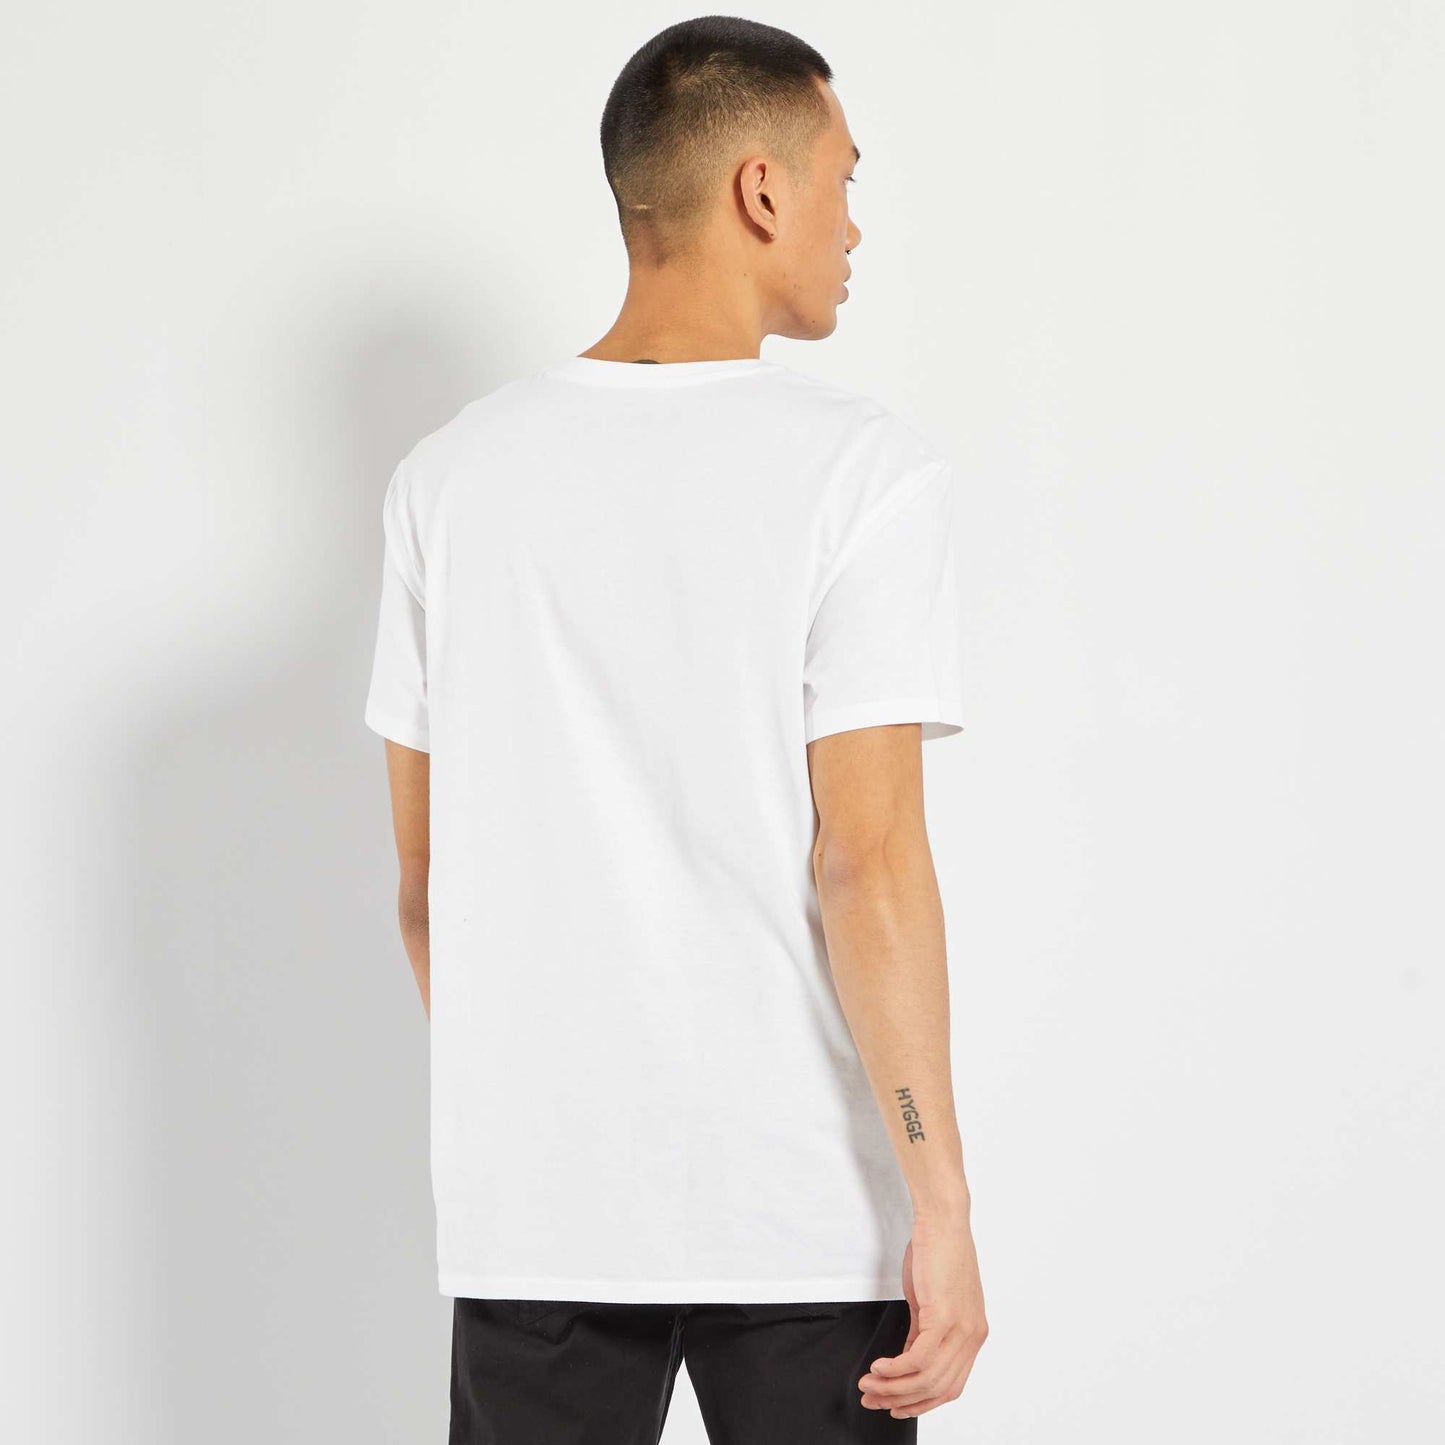 Regular cotton V-neck T-shirt white